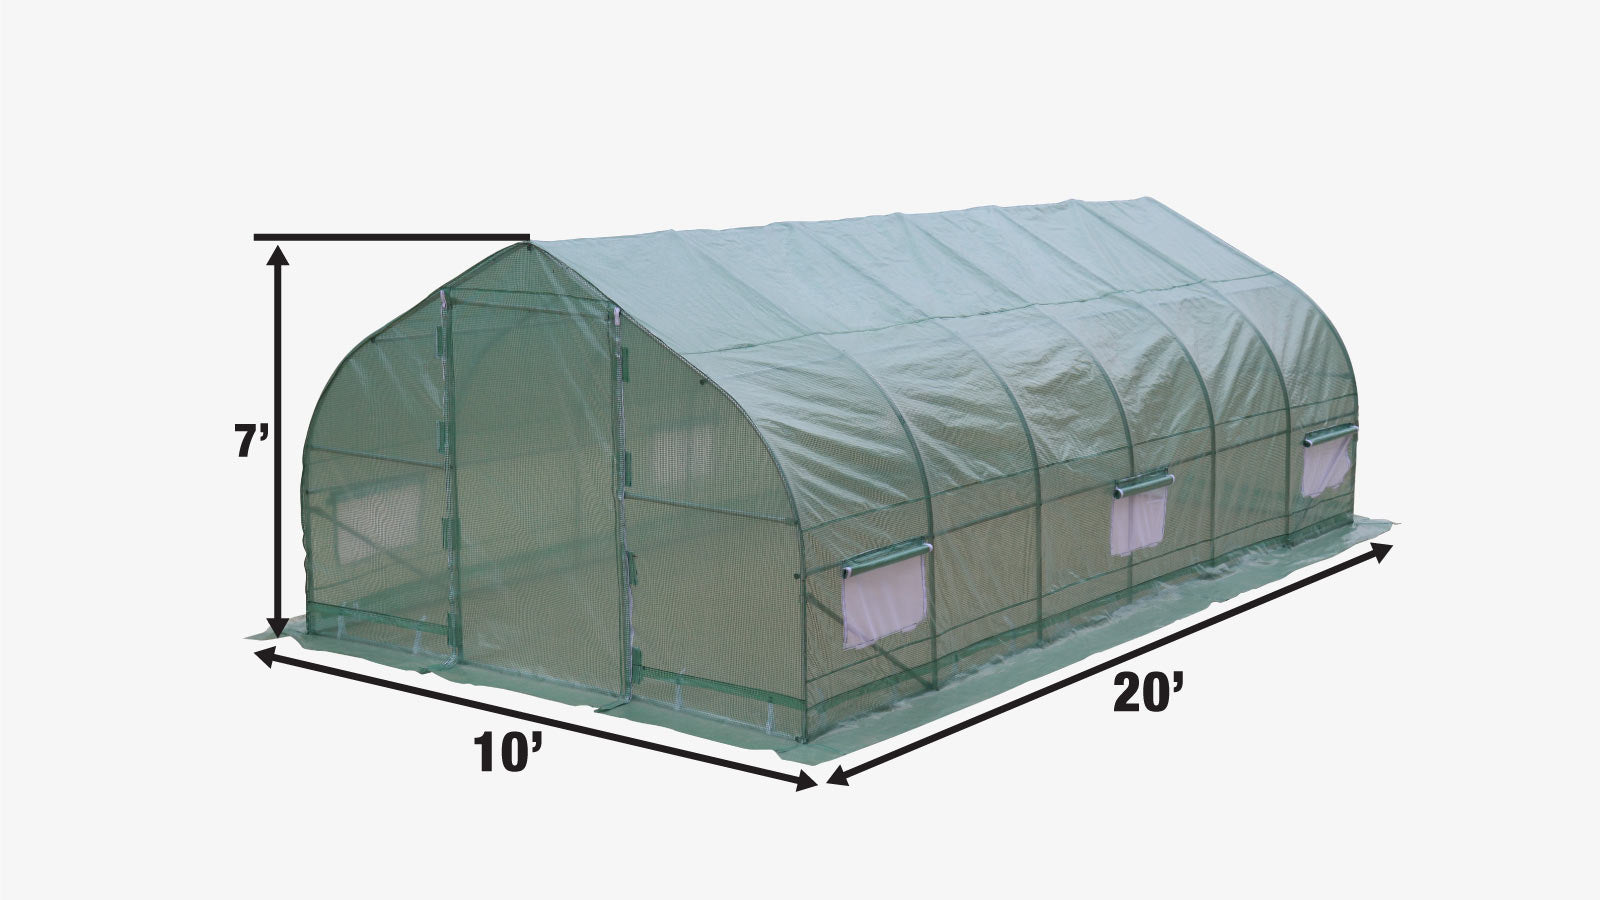 TMG Industrial 10' x 20' Tente de culture de serre tunnel avec couverture Ripstop Leno, cadre froid, fenêtres en maille enroulable, toit en pointe, TMG-GH1020P-specifications-image